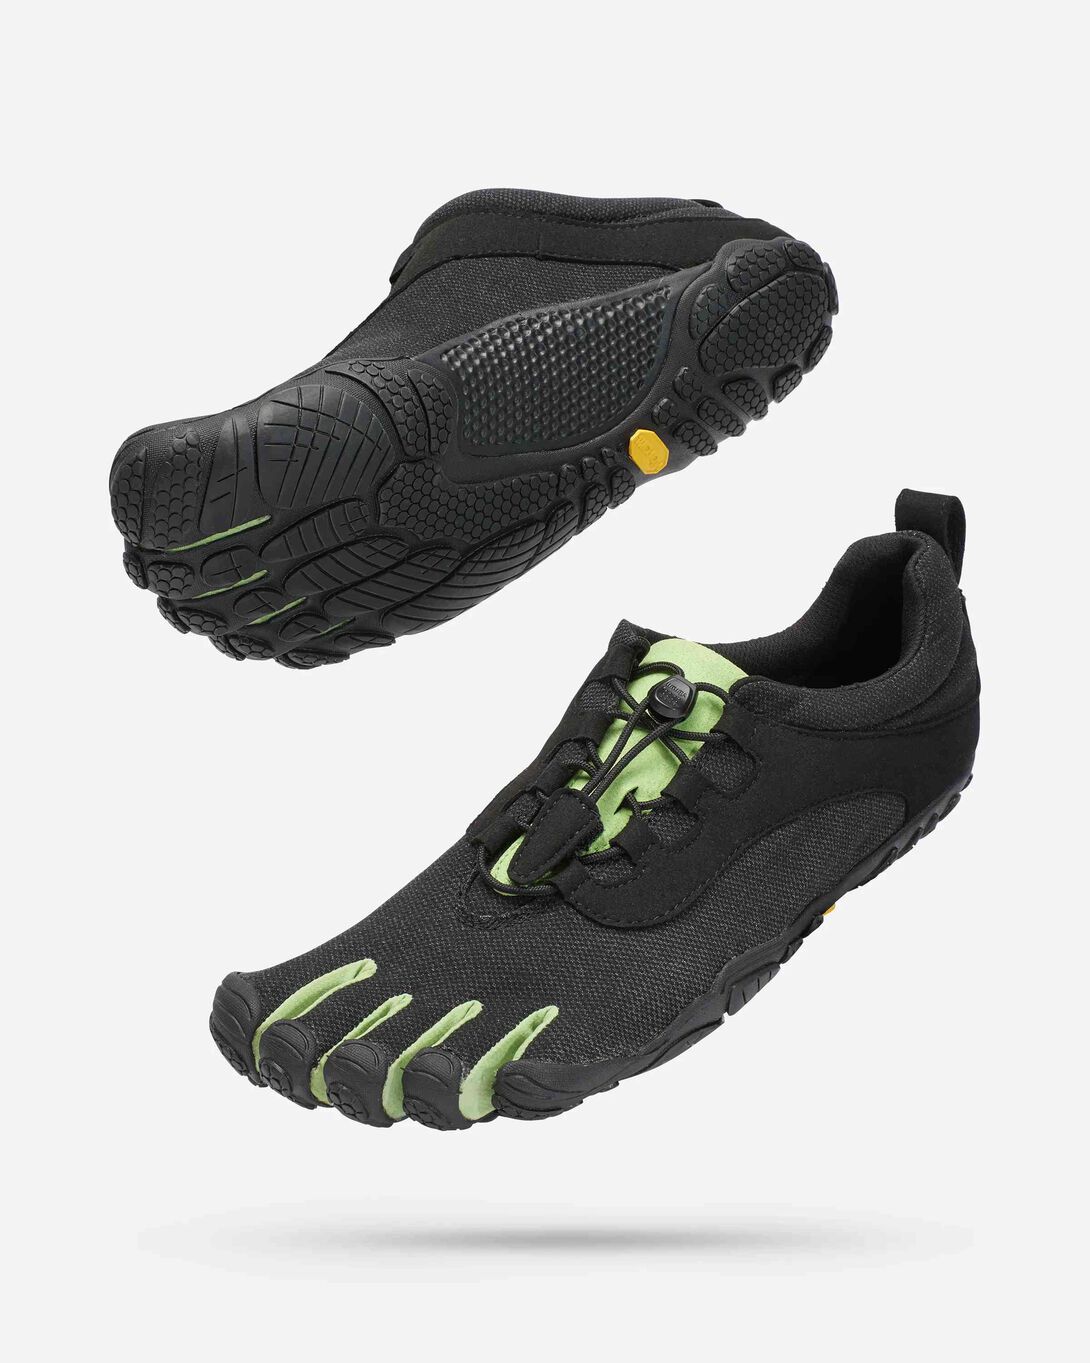 Zapatos de Deporte Hombre Zapatillas Trail Running Hombre Shoes for Men  Zapatillas Gym Hombre Zapatillas de Seguridad Hombre Ligeras Correr  Deportivos